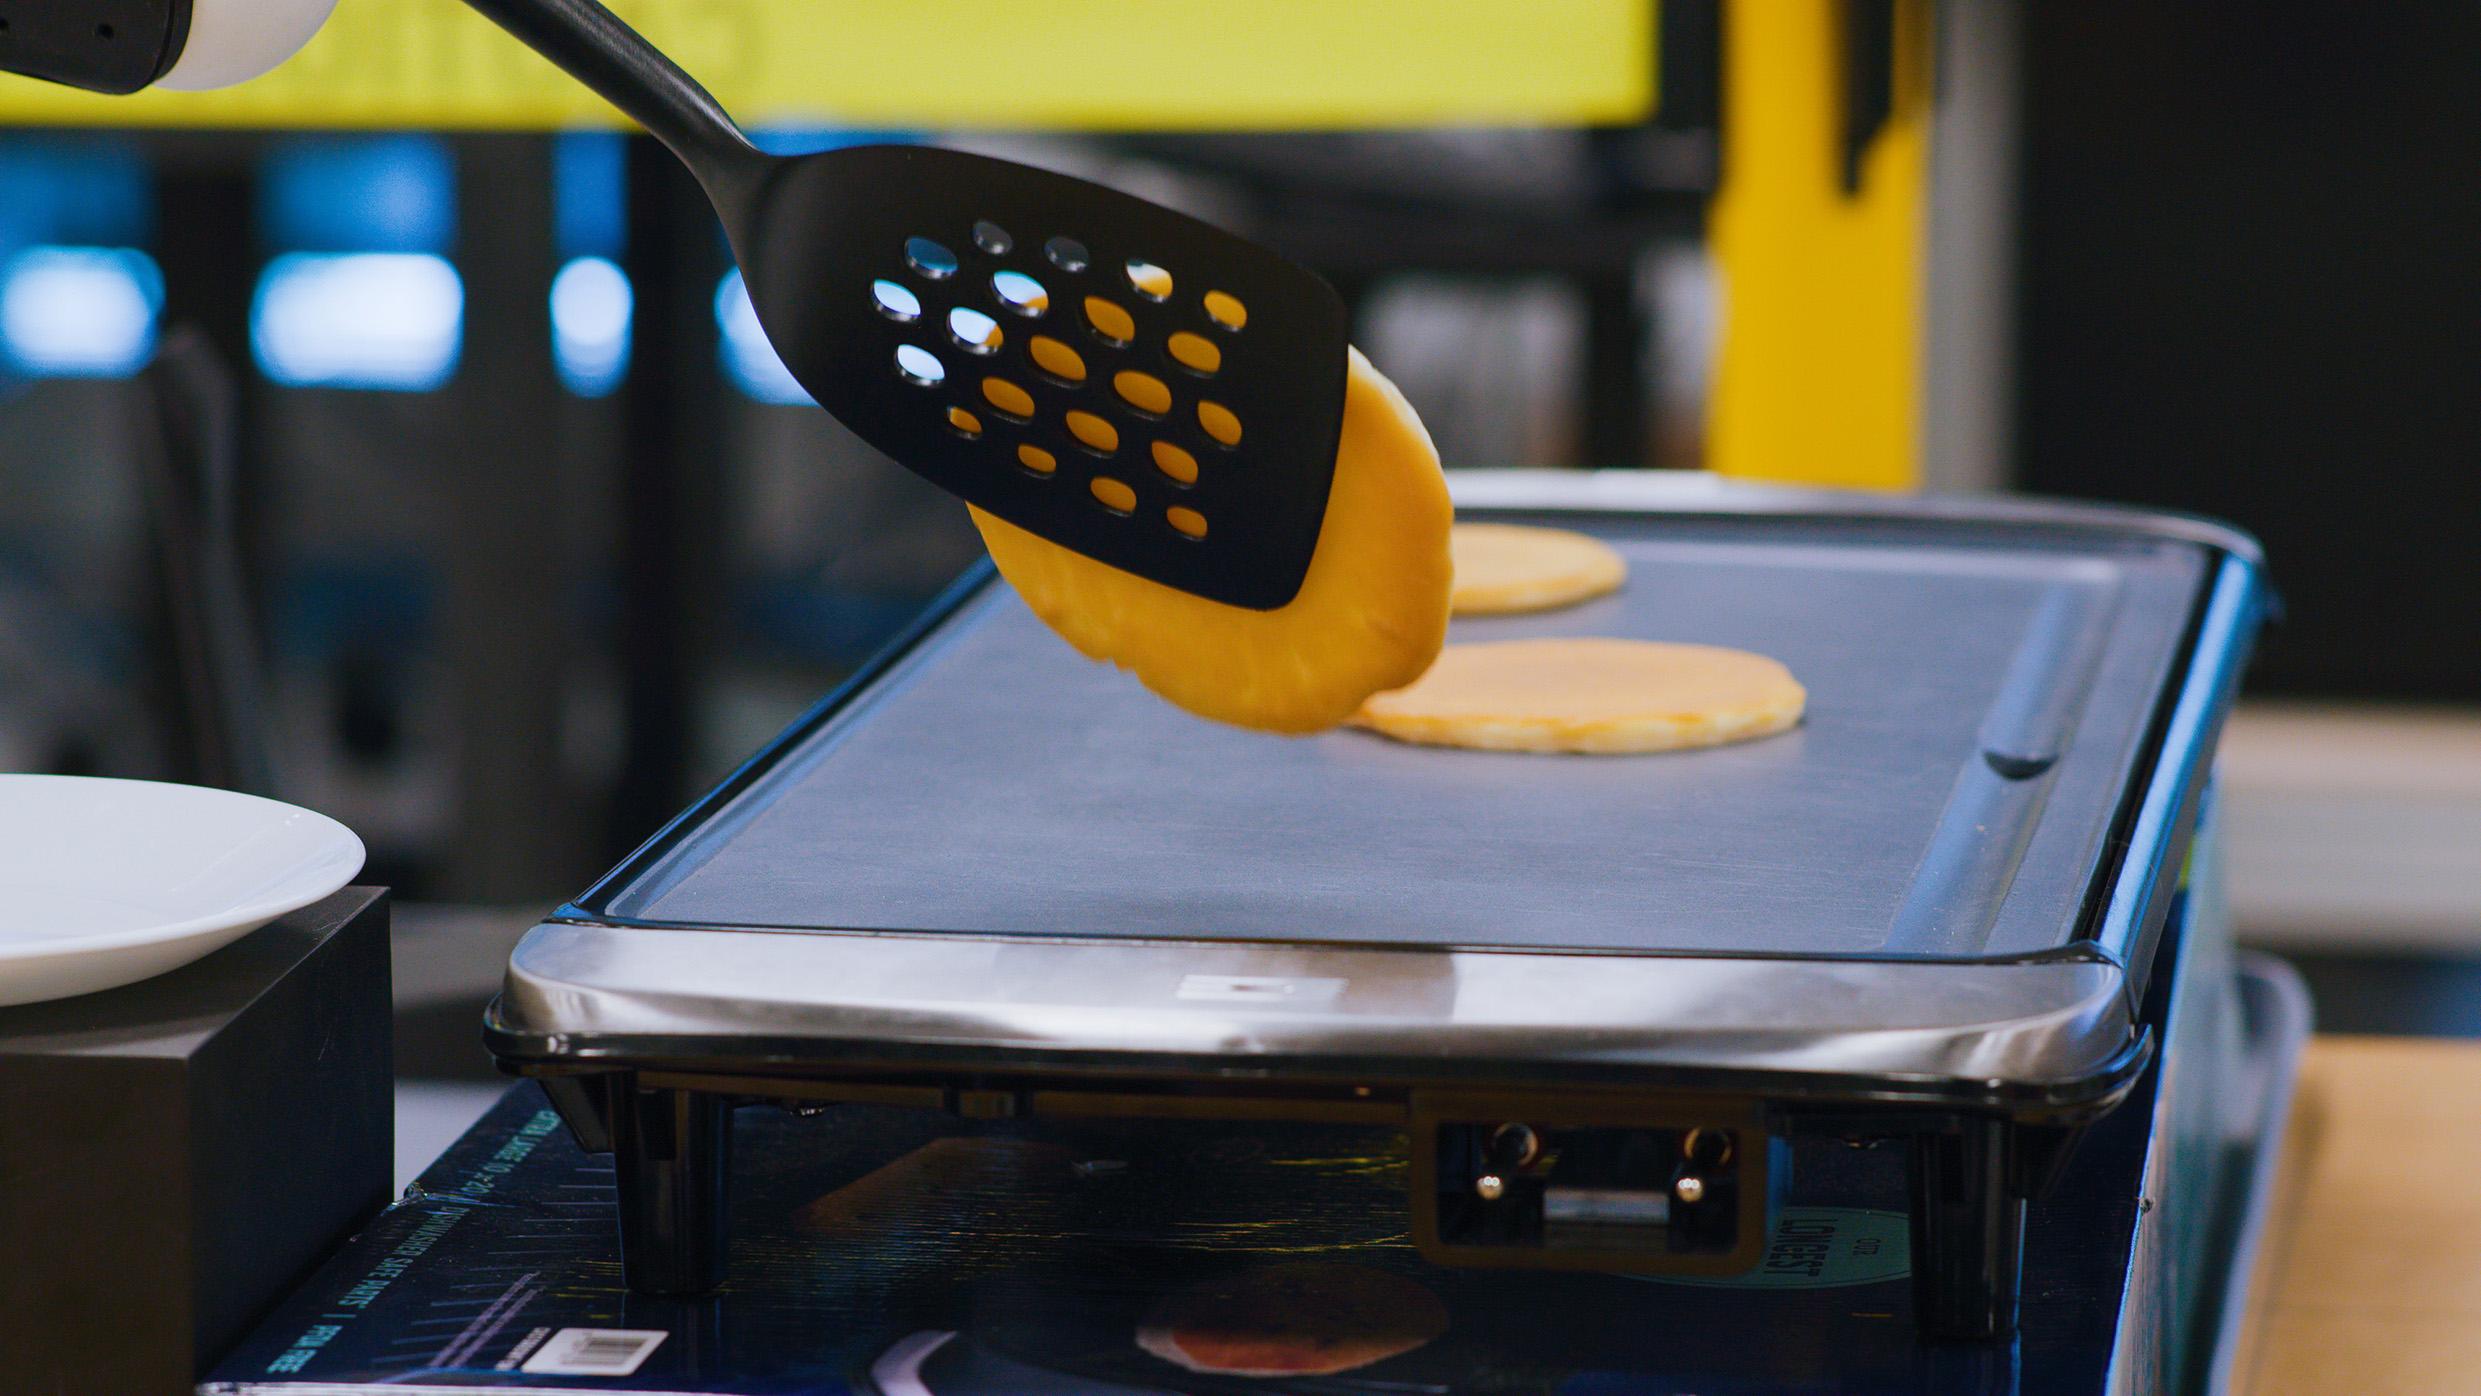 robotics diffusion policy flipping pancakes